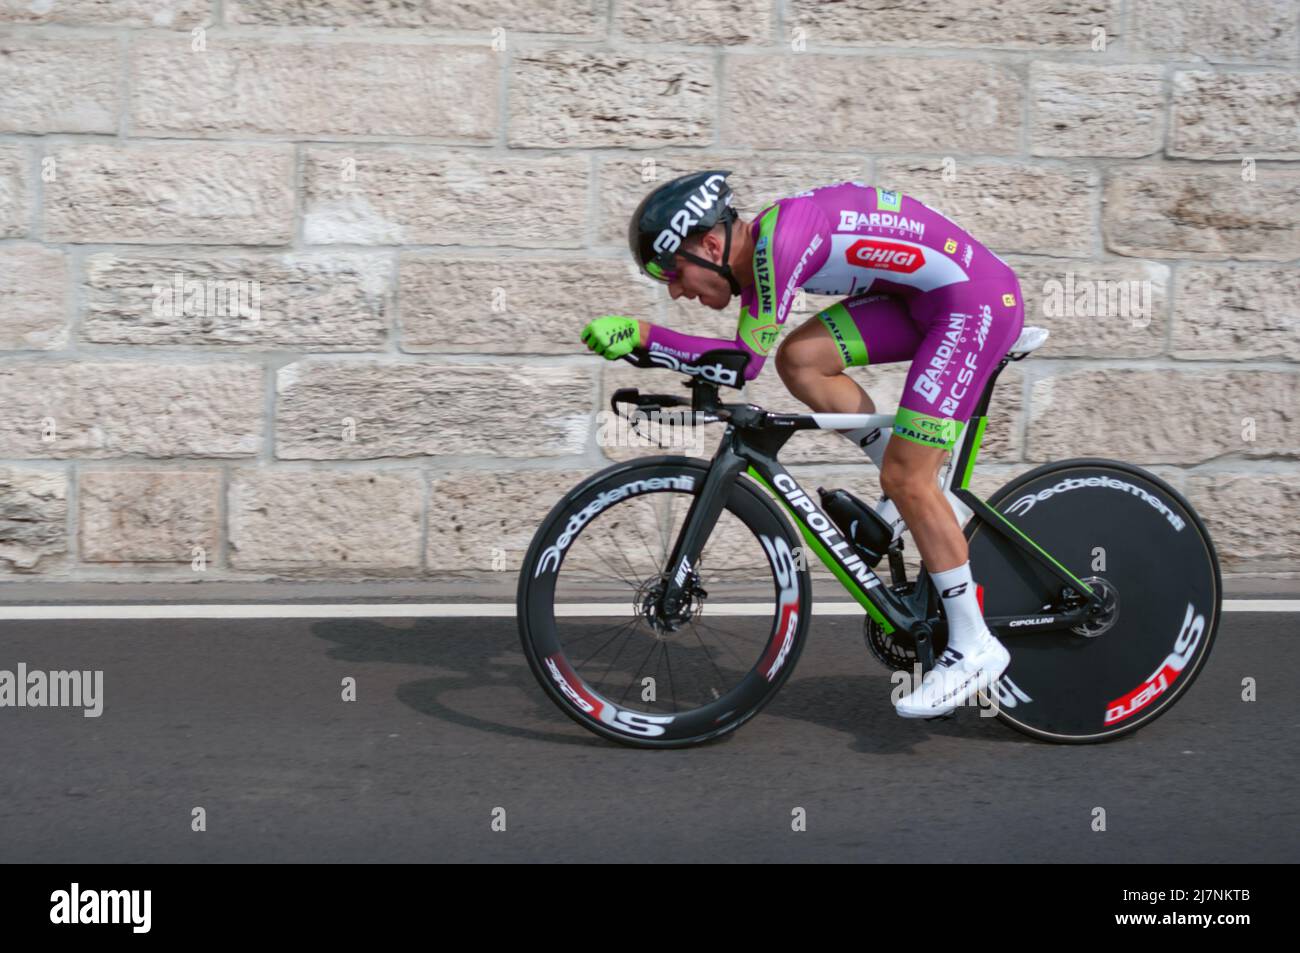 BUDAPEST, UNGARN - 07. MAI 2022: Profi-Radfahrer Luca Rastelli TEAM BARDIANI CSF FAIZANE' Giro D'Italia Etappe 2 Zeitfahren - Radrennen am 0. Mai Stockfoto